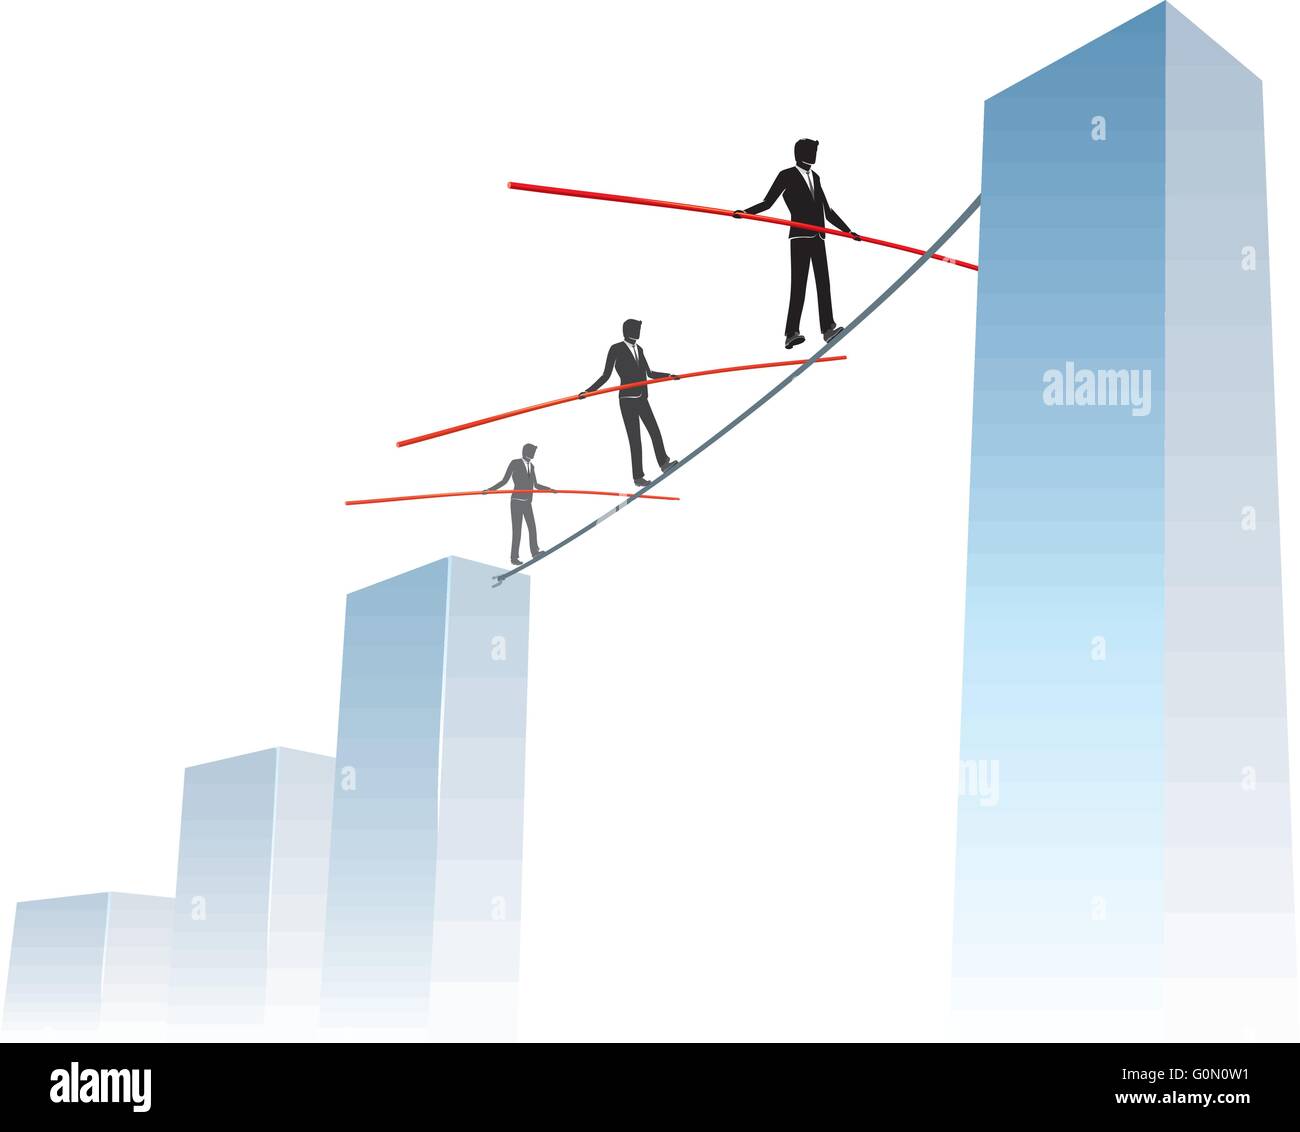 Geschäftsrisiken Erreichen Hohe Graph-Conceptual-Illustration von Geschäftsleuten, die auf einem engen Seil zu höheren Zielen übertreten Stock Vektor